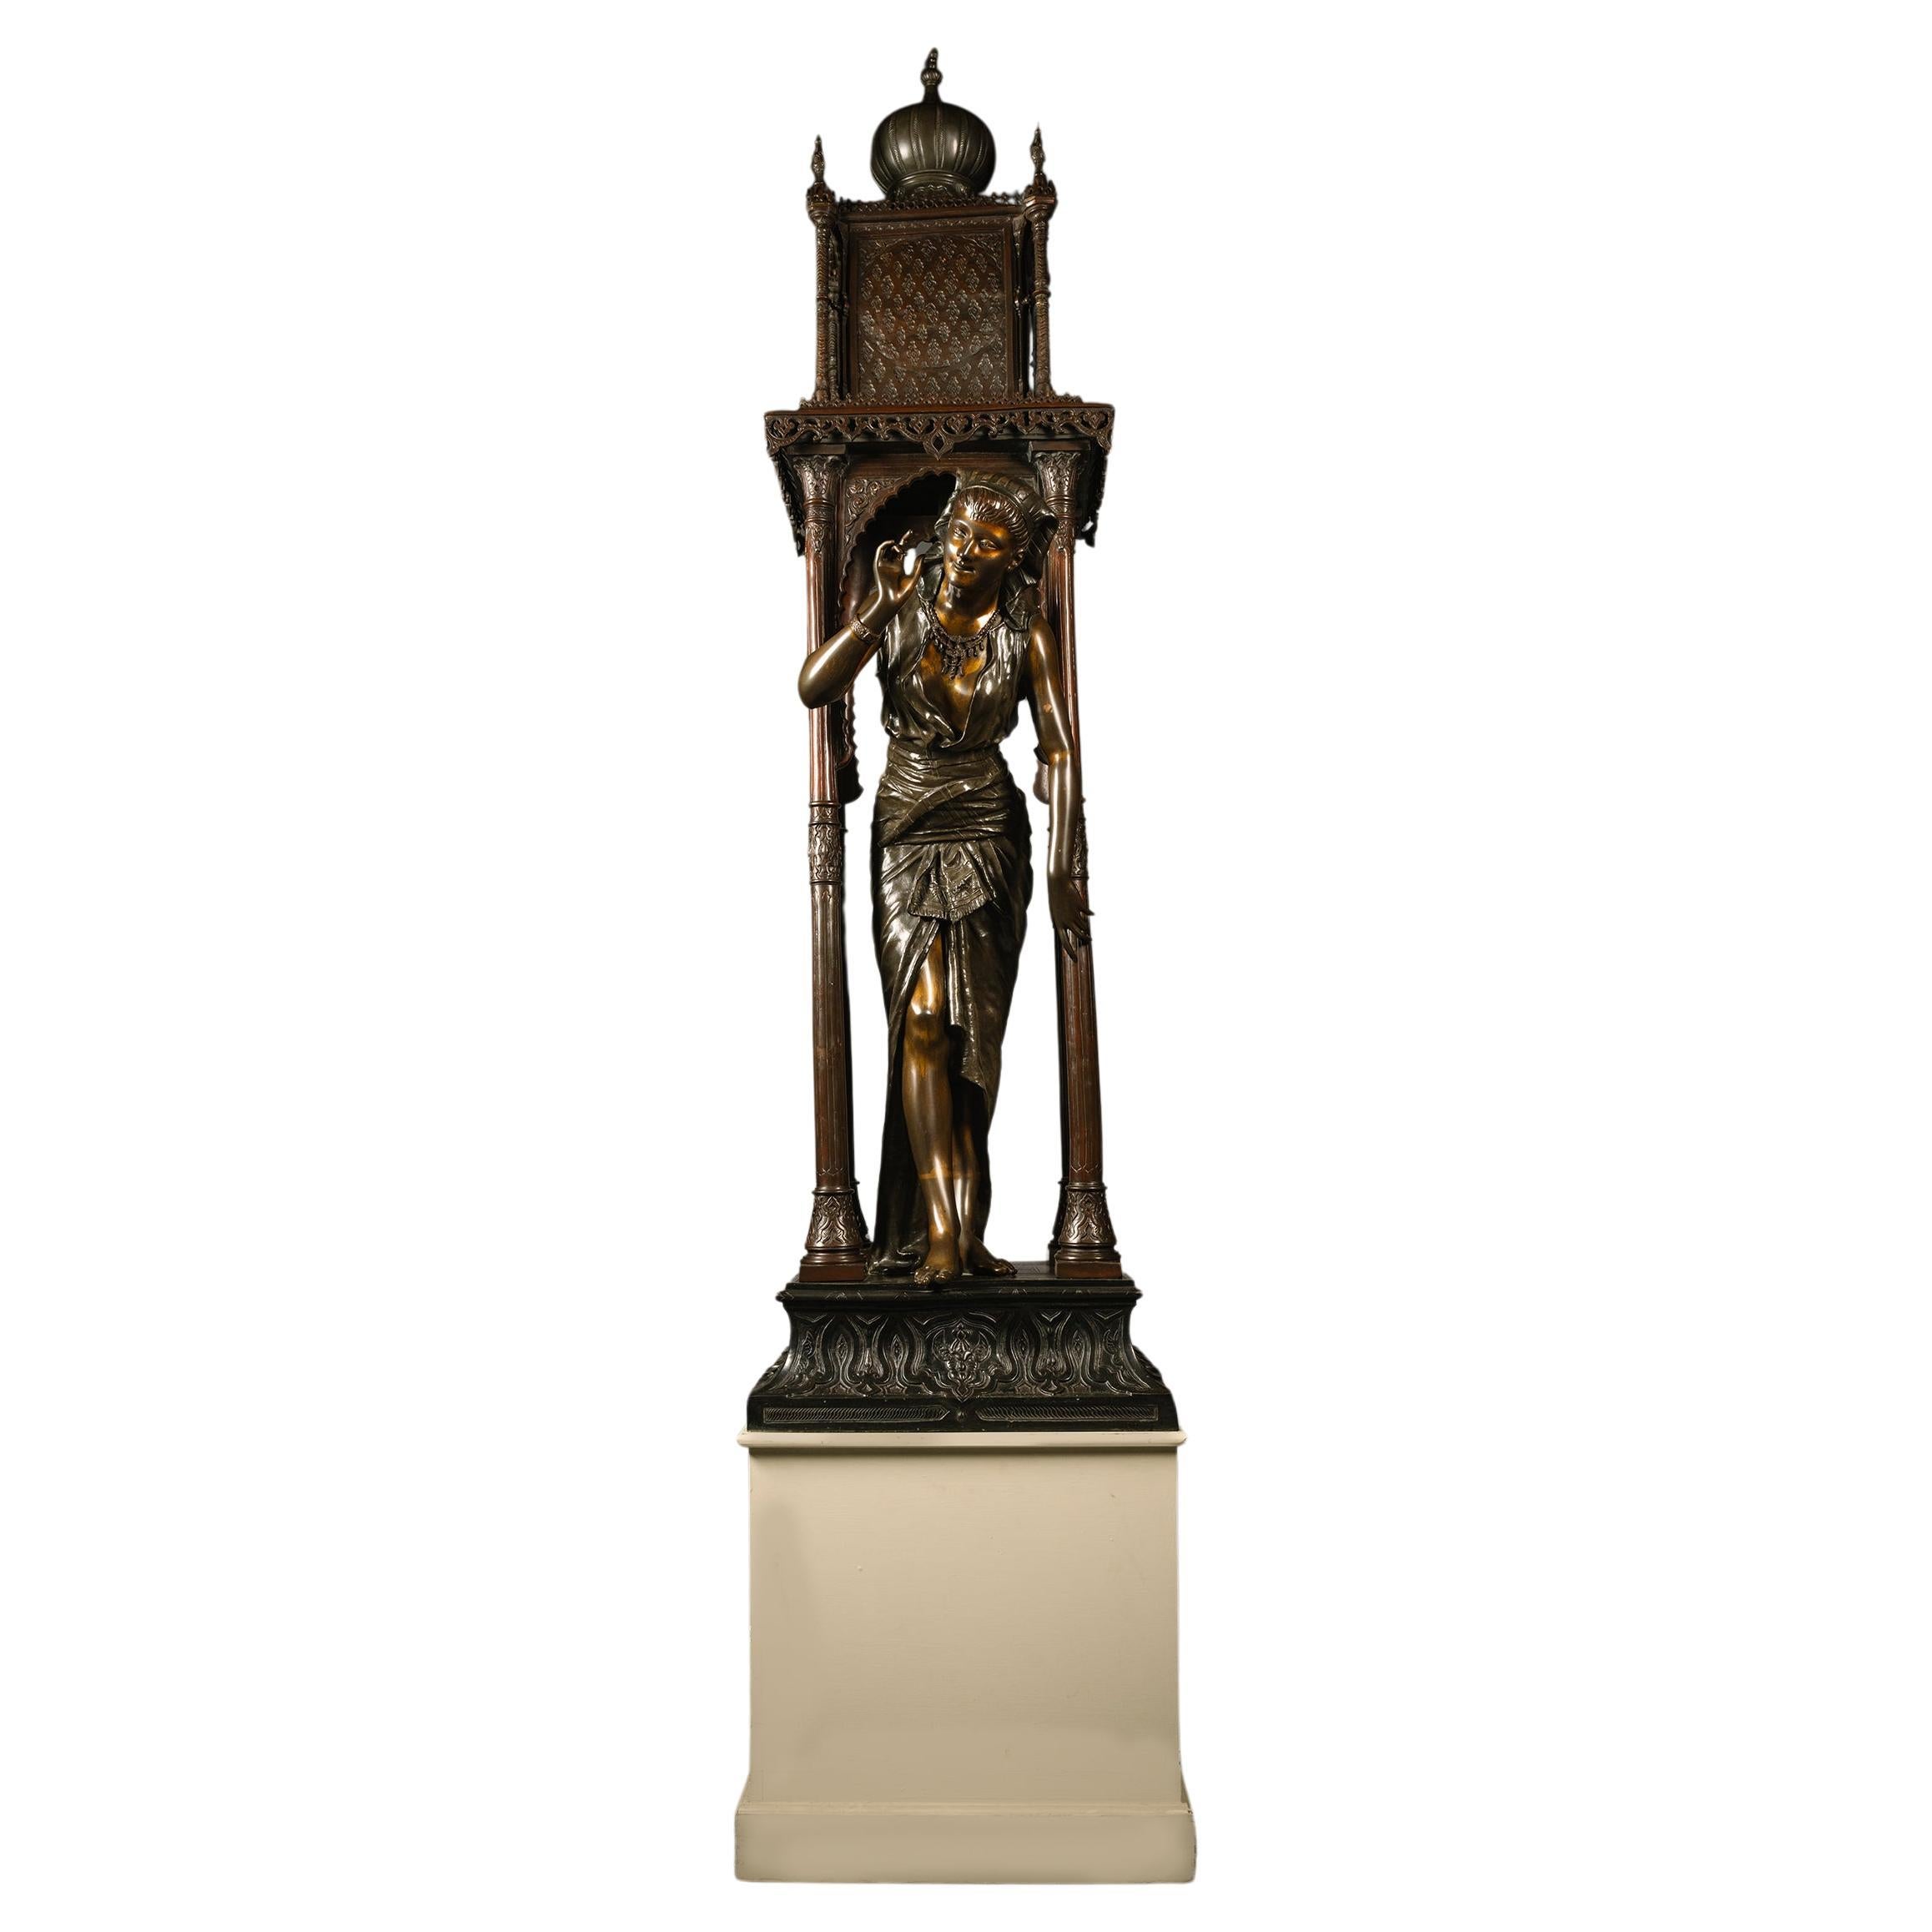 Statue en bronze orientaliste grandeur nature, attribuée à Louis Hottot